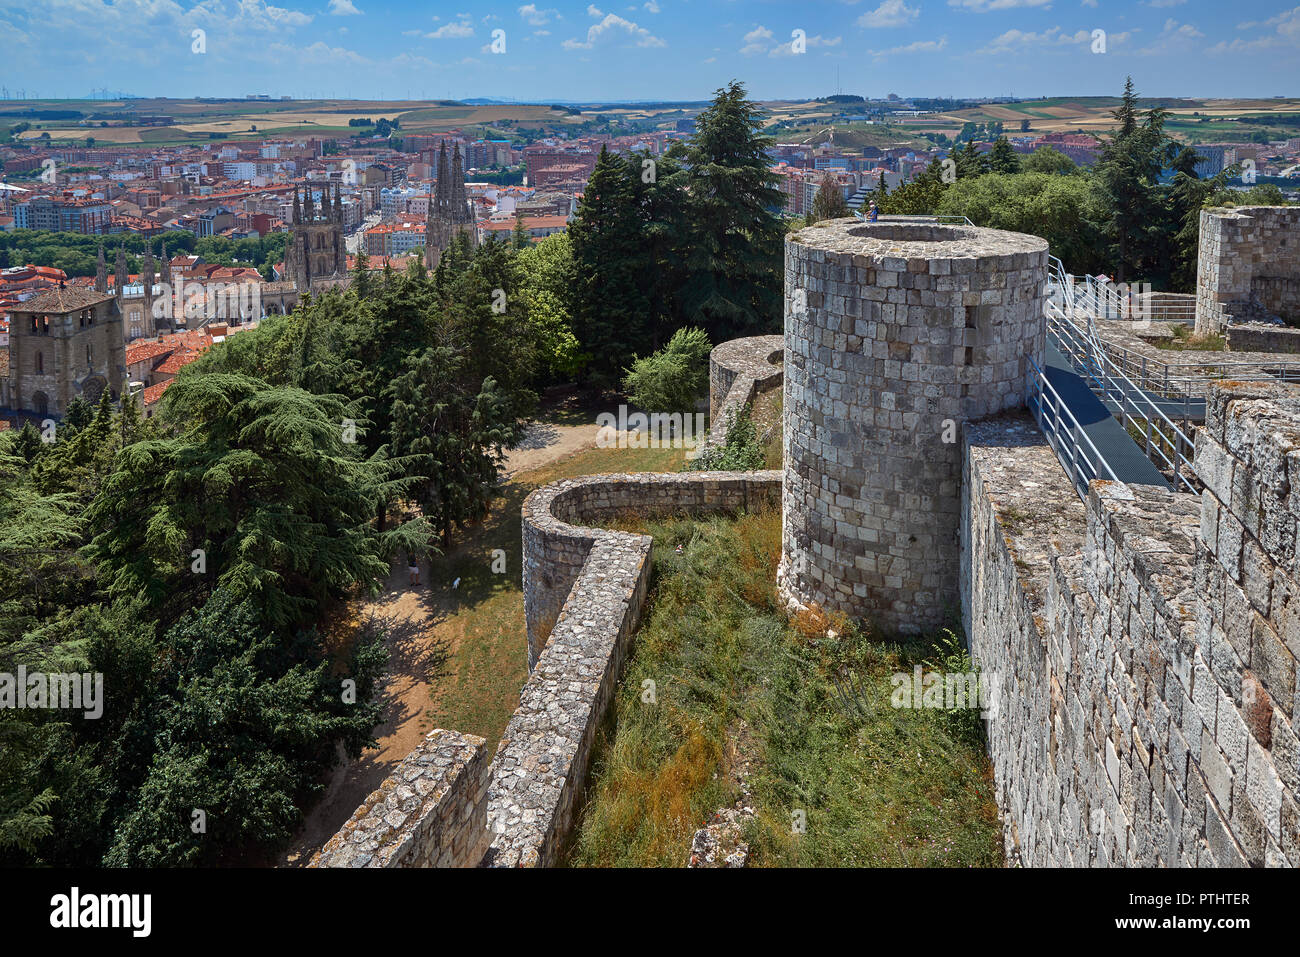 Allgemeine Ansicht der Stadt Burgos und seine Kathedrale von Turm der Burg. Kastilien und Leon, Spanien, Europa Stockfoto